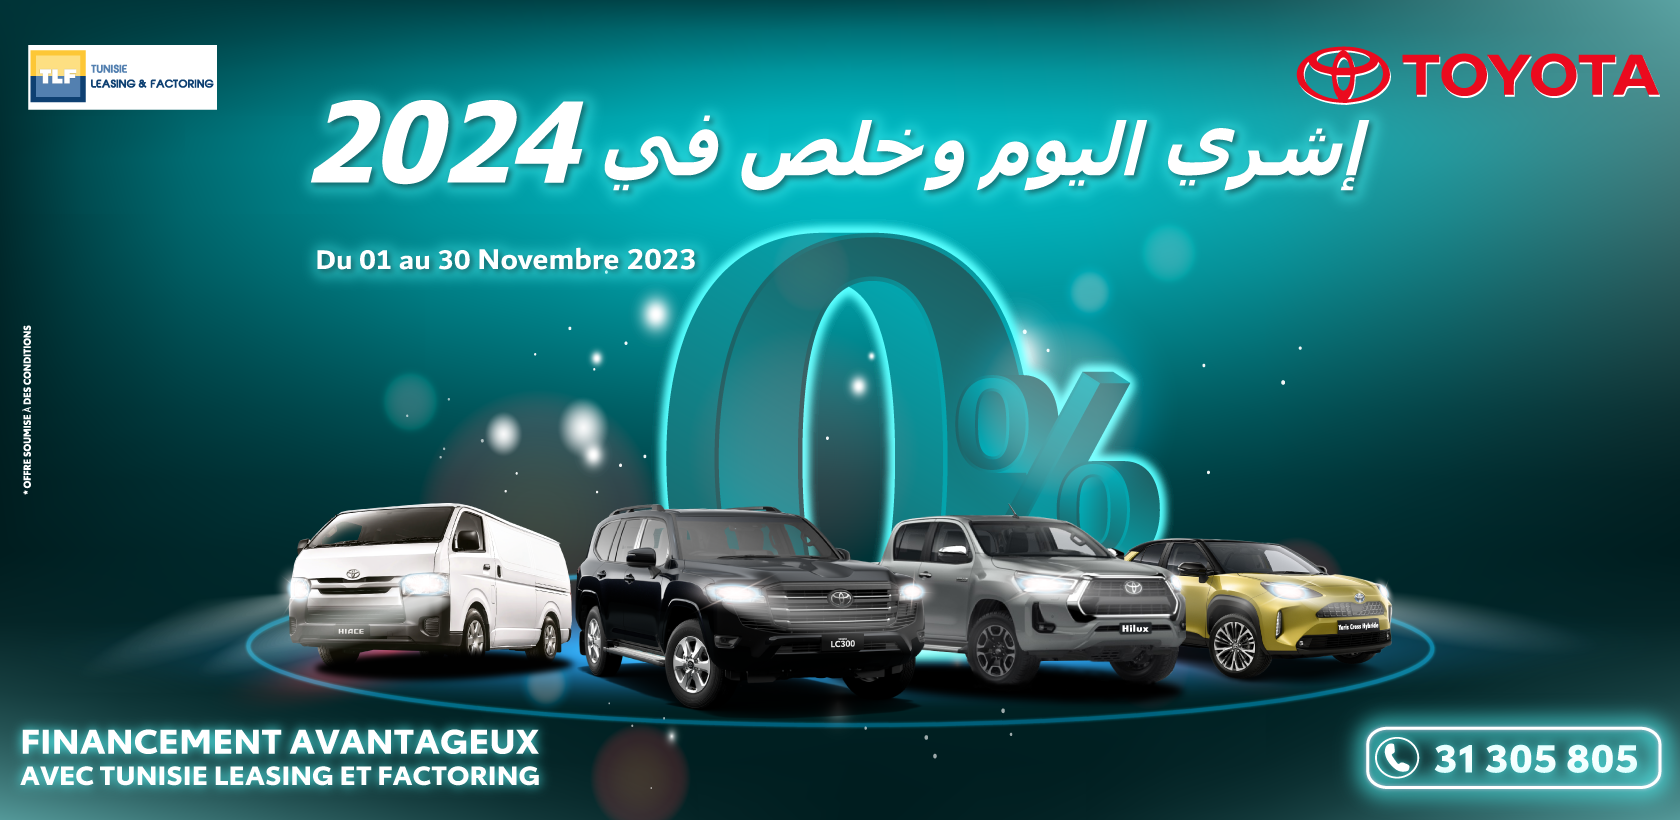 BSB Toyota et Tunisie Leasing vous proposent d'acheter votre voiture aujourd'hui et de payer en 2024